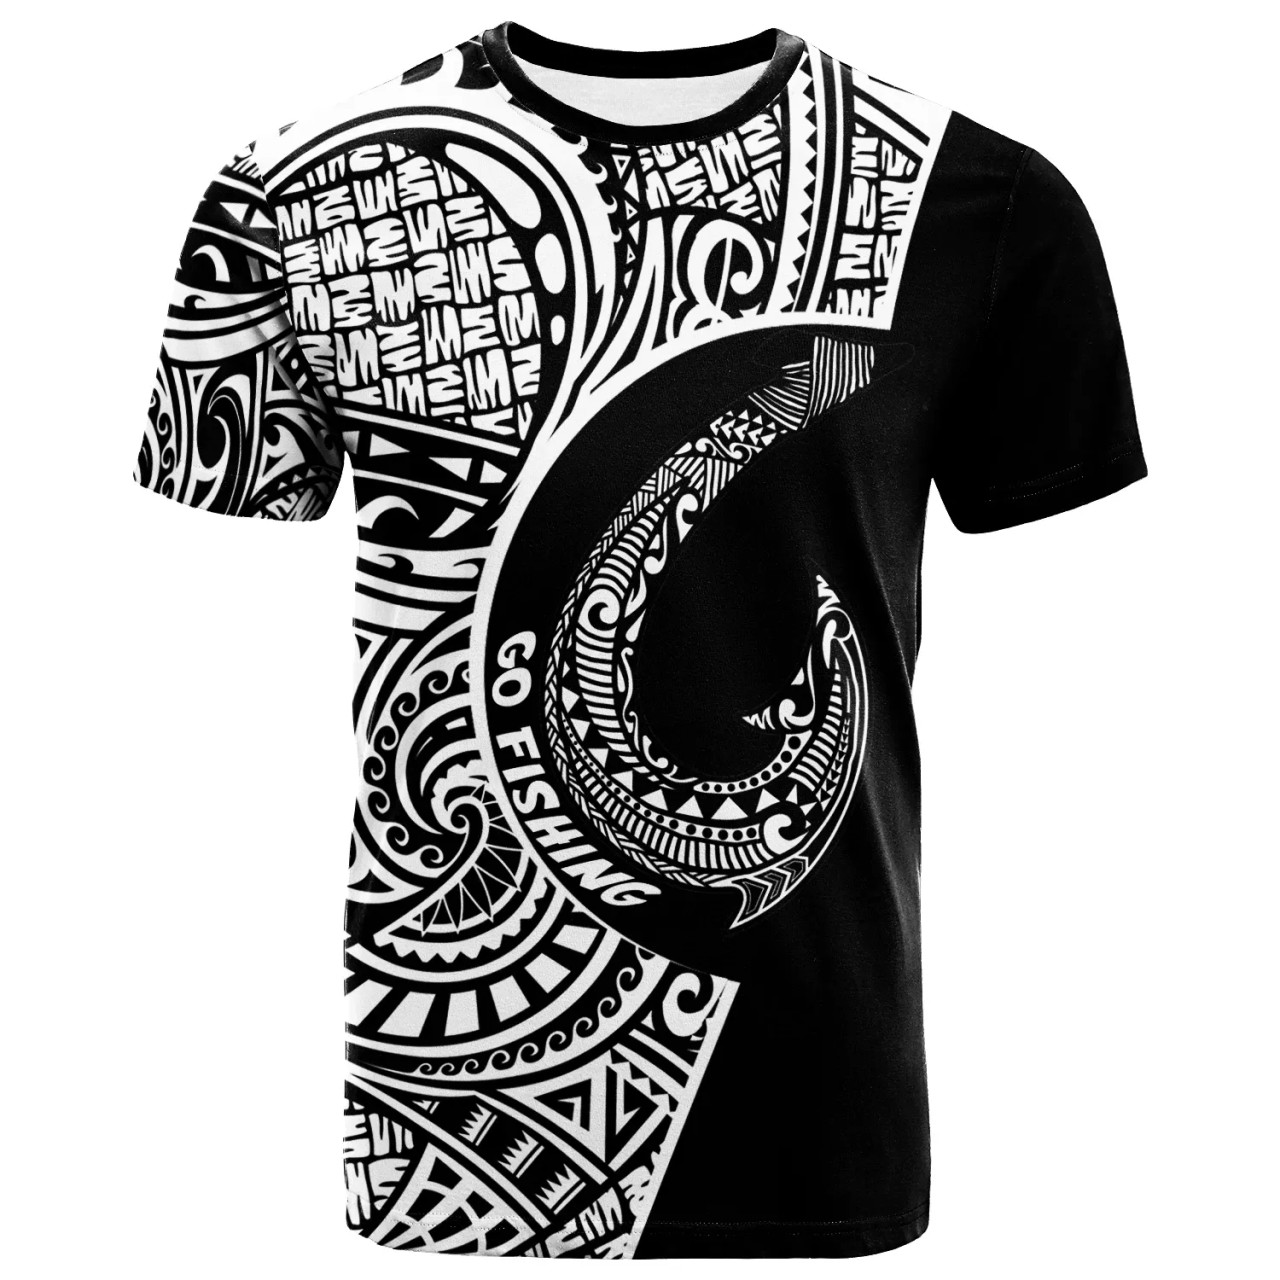 Tonga T-Shirt -Tonga Go Fishing Black Color 1